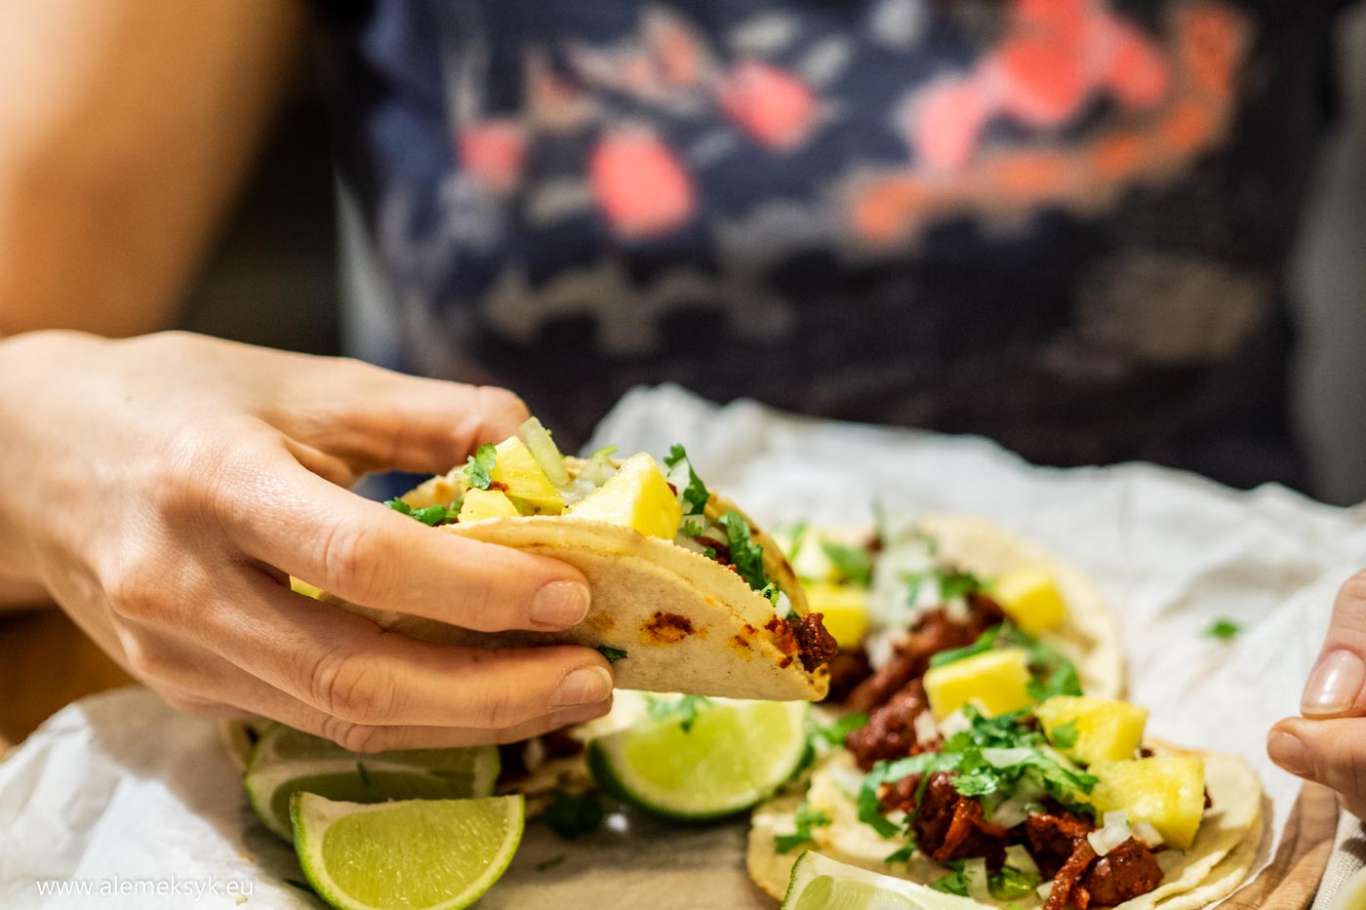 Taco z wieprzowiną w cytrusowej marynacie achiote - mieszanka smaków i aromatów Meksyku